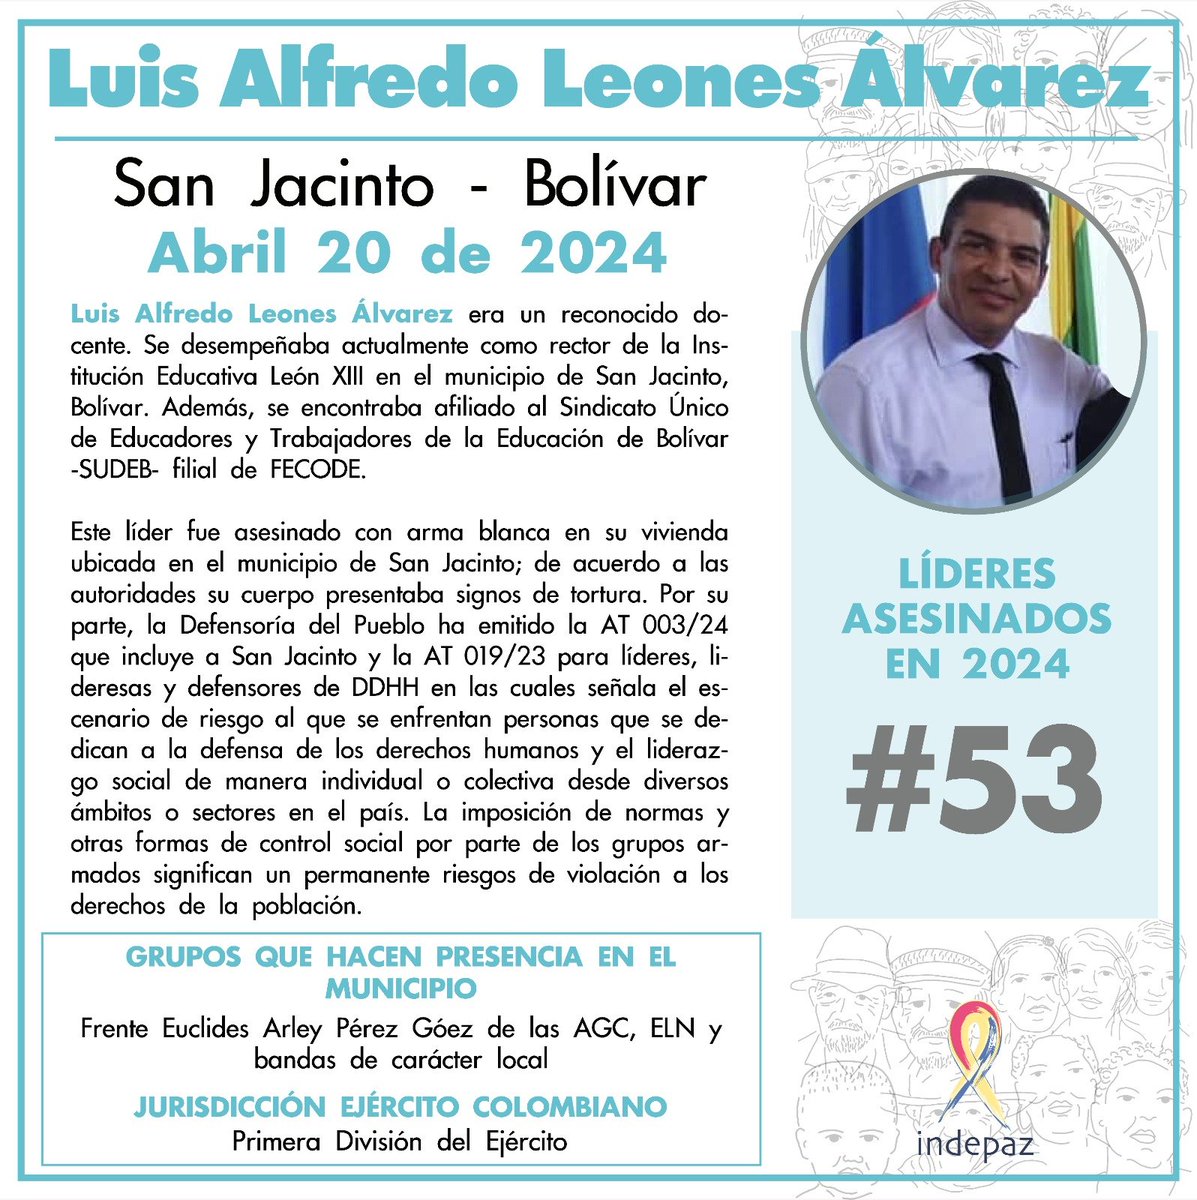 #53 Líderes asesinados en 2024 Luis Alfredo Leones Álvarez 20/04/24 San Jacinto, Bolívar Se desempeñaba actualmente como rector de la Institución Educativa León XIII en el municipio de San Jacinto, Bolívar. Además, se encontraba afiliado al Sindicato -SUDEB-. Filial de @fecode.